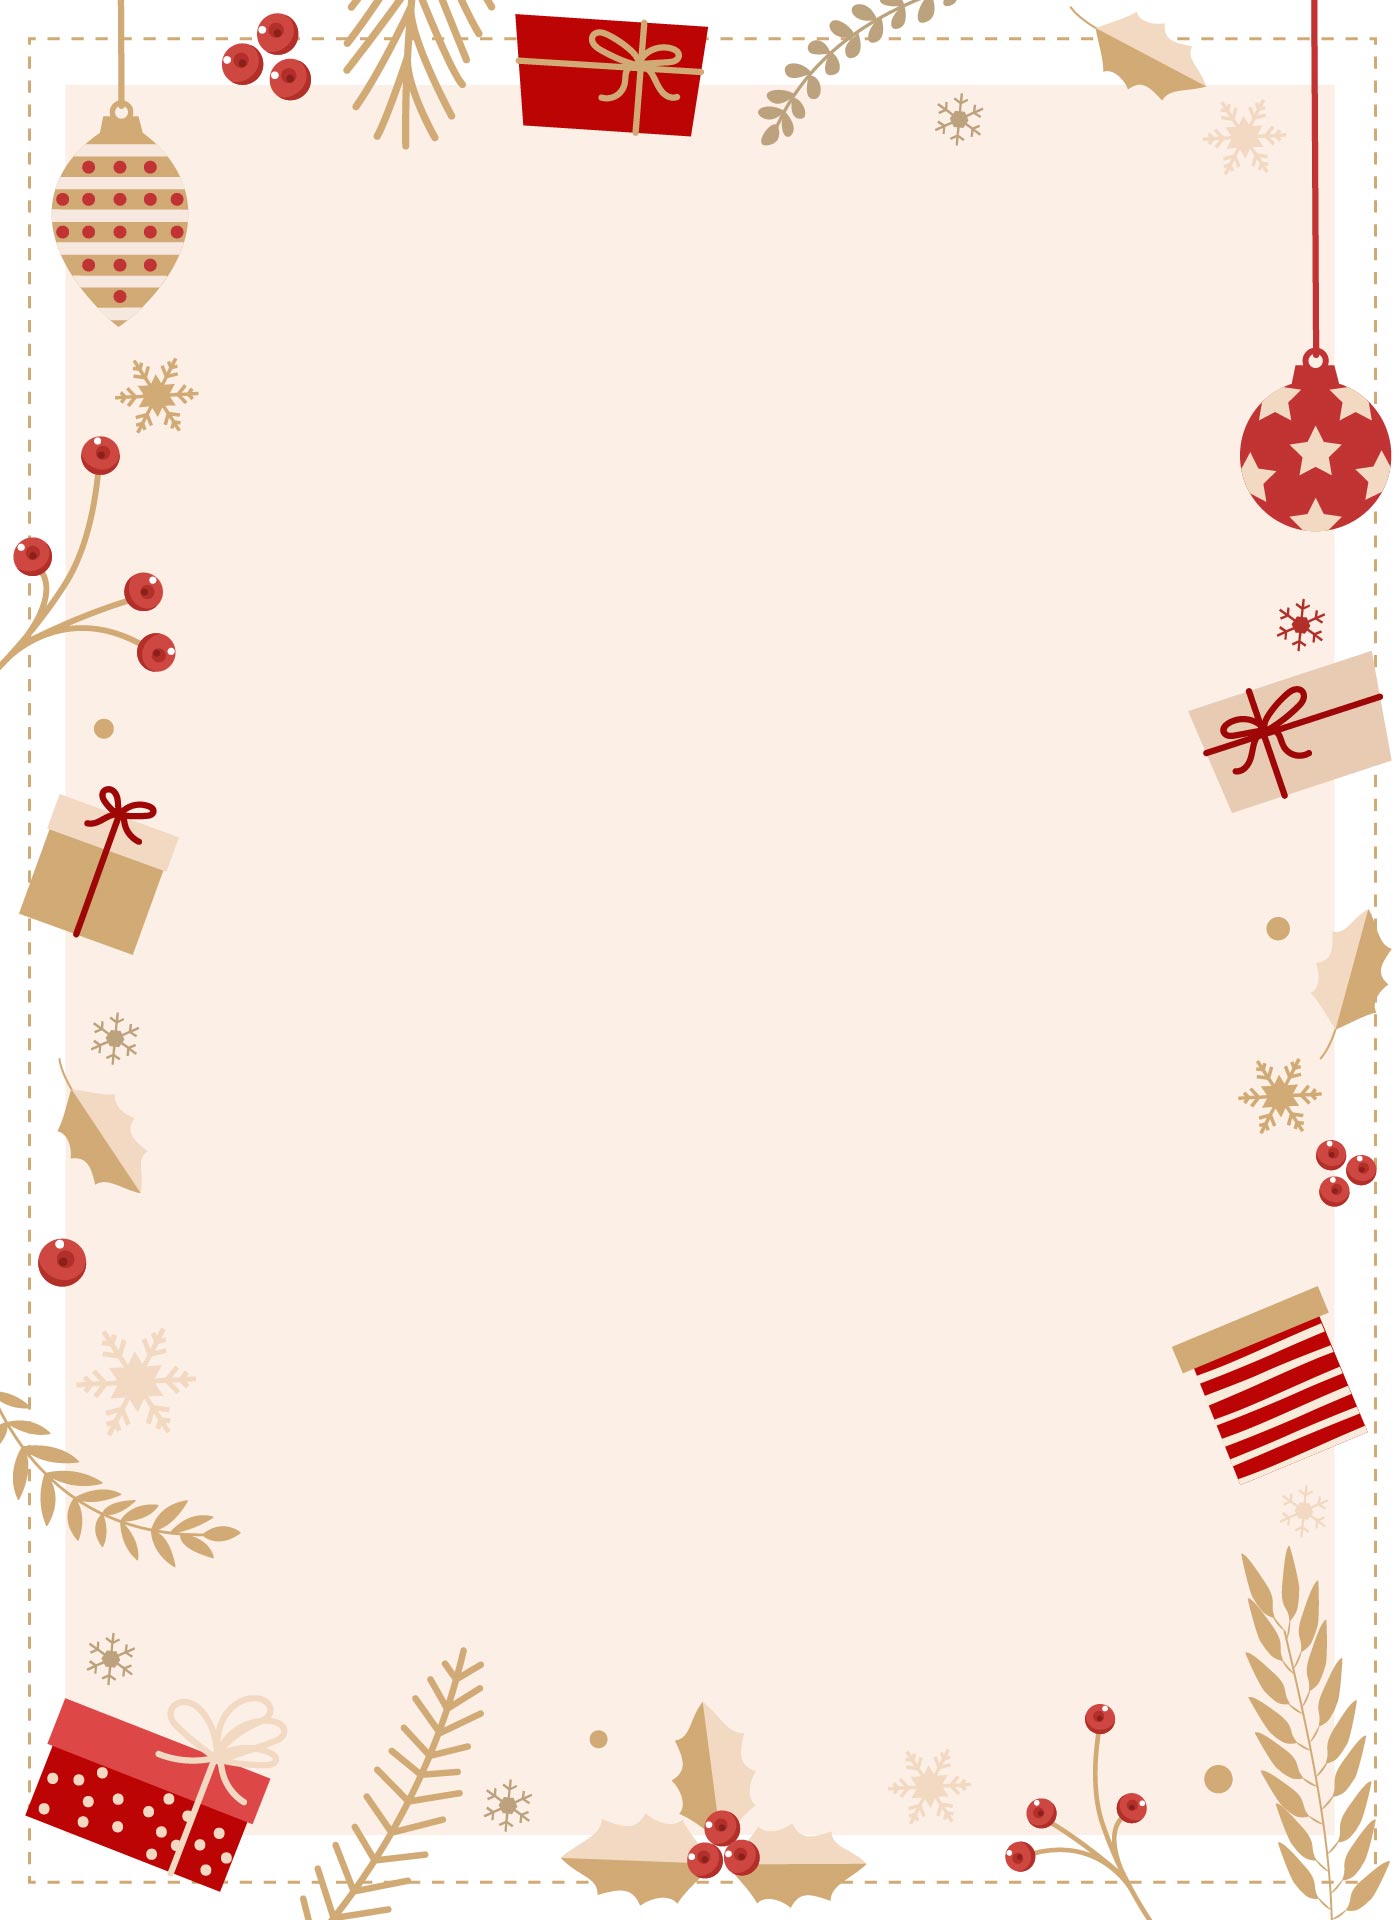 Printable Christmas Card Border Template